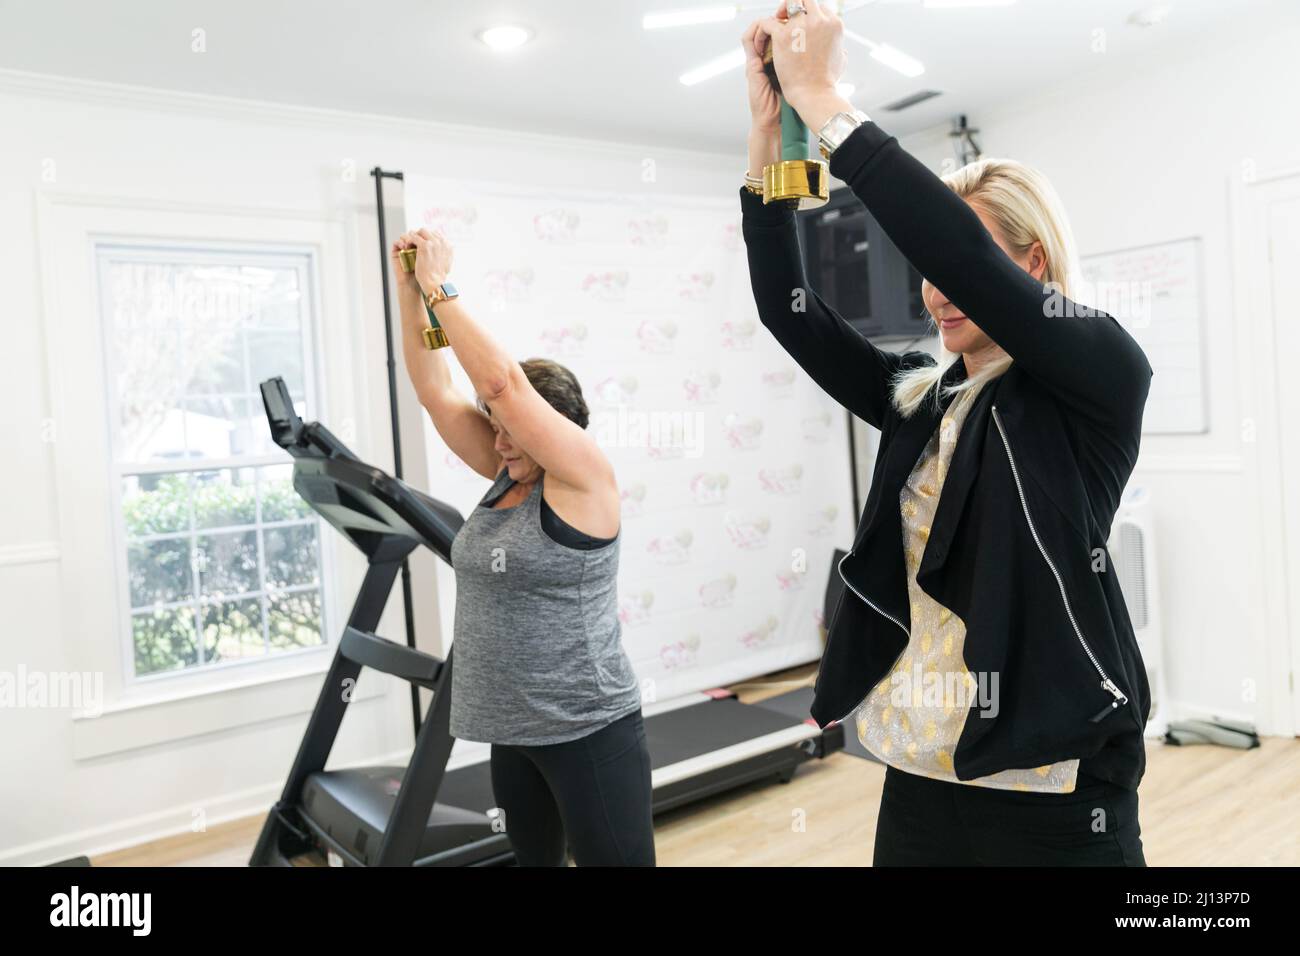 Un personal trainer femminile che aiuta un cliente esercizio fisico, addestrare, e costruire il muscolo utilizzando piccoli pesi a mano in una palestra Foto Stock